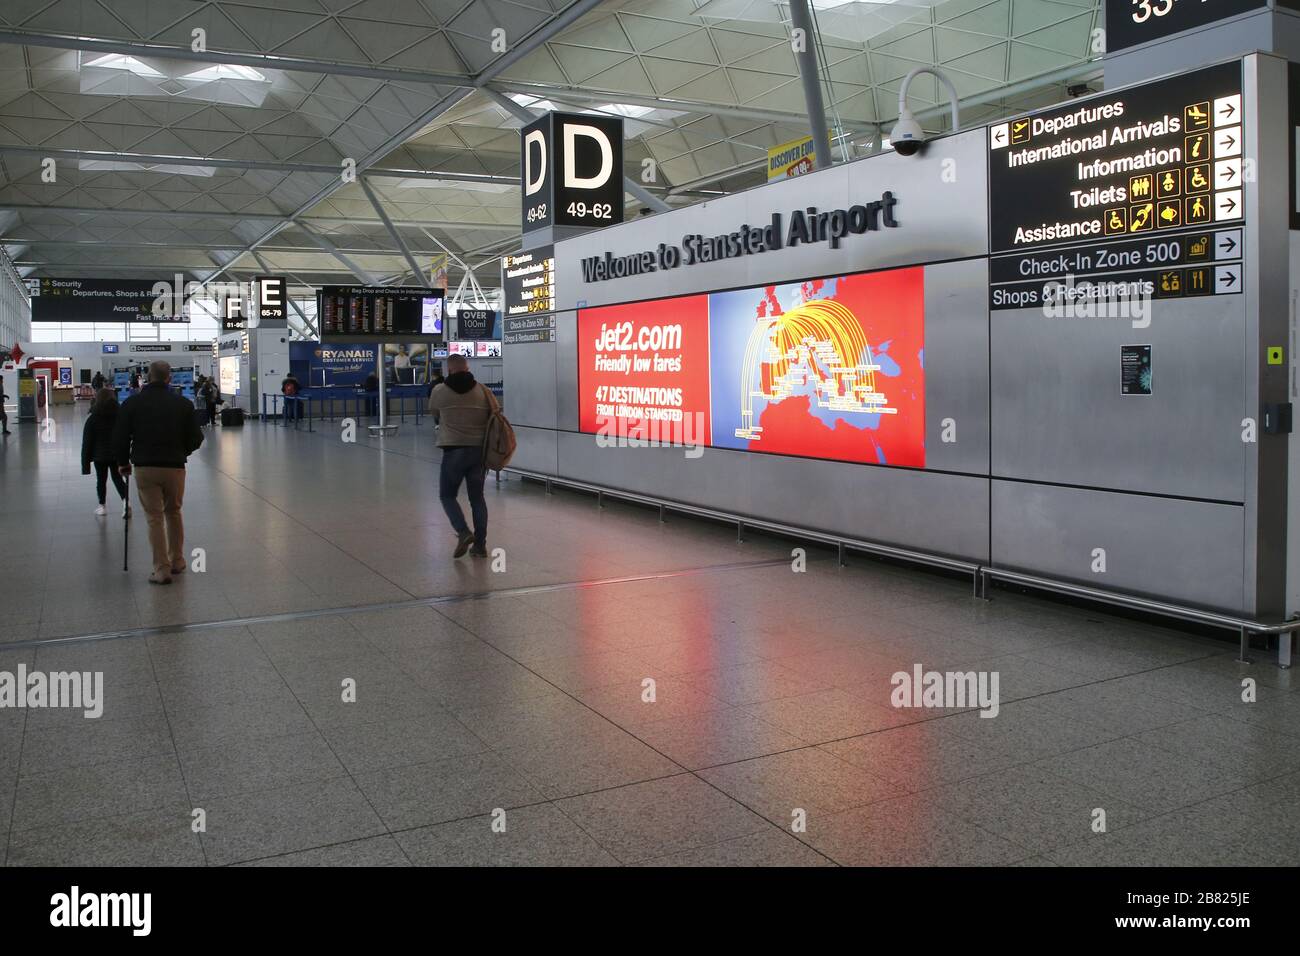 Flughafen Stansted, Großbritannien. März 2020. Die britische Regierung kündigte an, dass Beamte alle Flugzeuganflüge auf Flughäfen aussetzen können, um die Grenzsicherheit zu erhalten. Ein sehr verlasser Flughafen Stansted während der Krise in Coronavirus. Kredit: Jason Mitchell/Alamy Live News Stockfoto